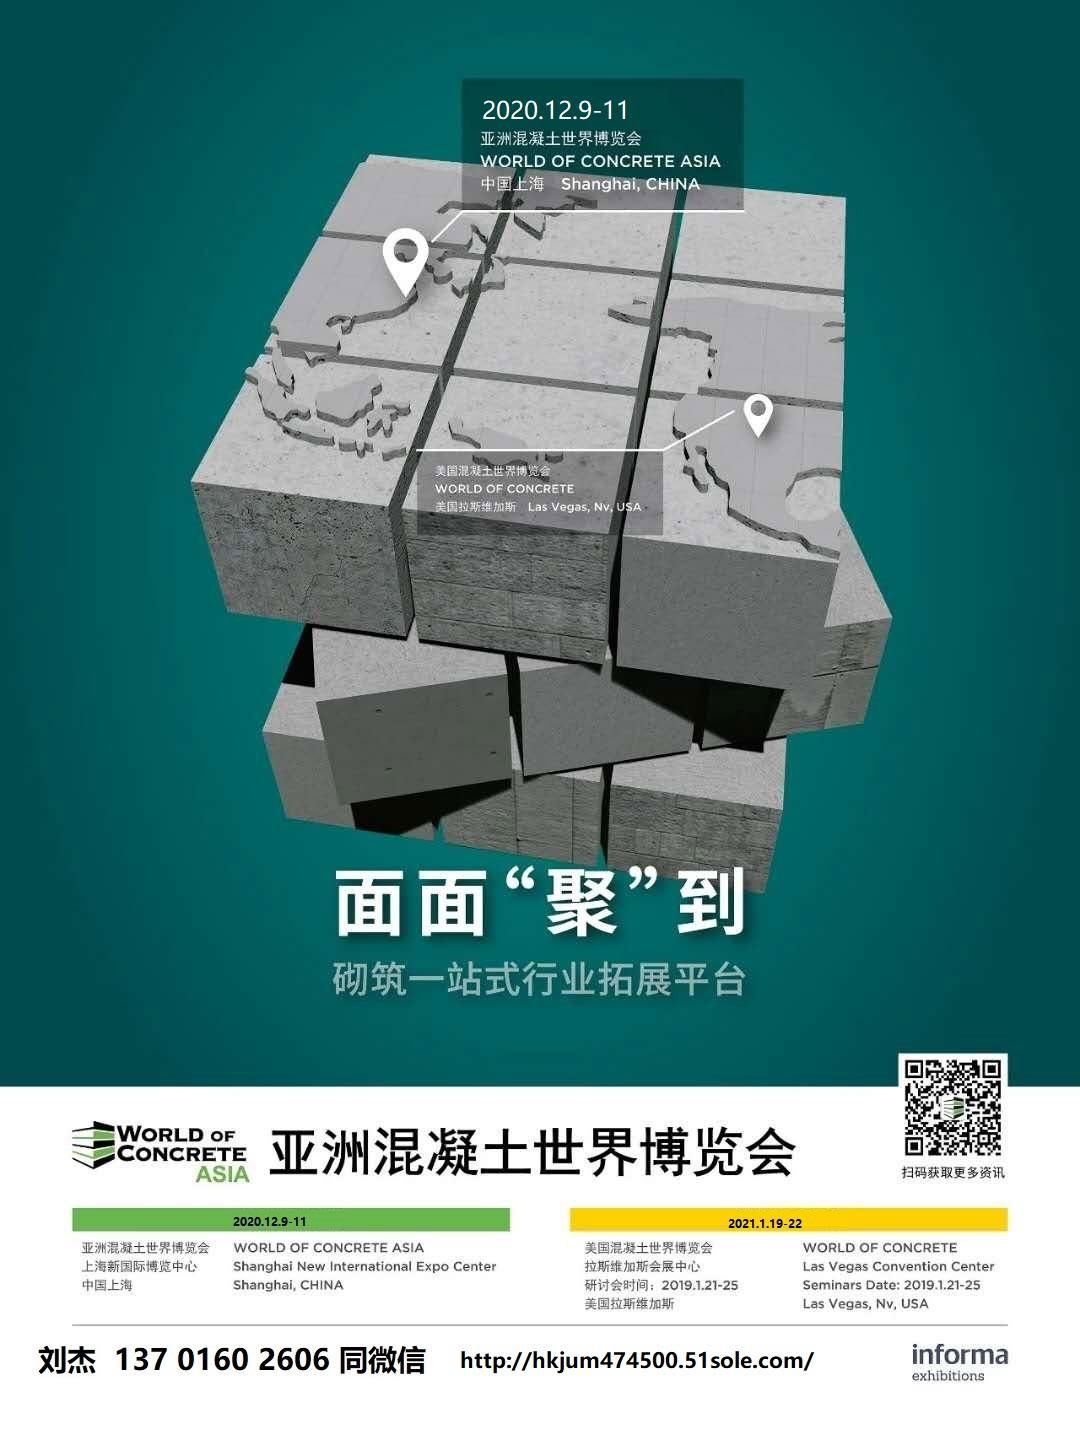 2021上海國際保溫材料與節能技術展覽會